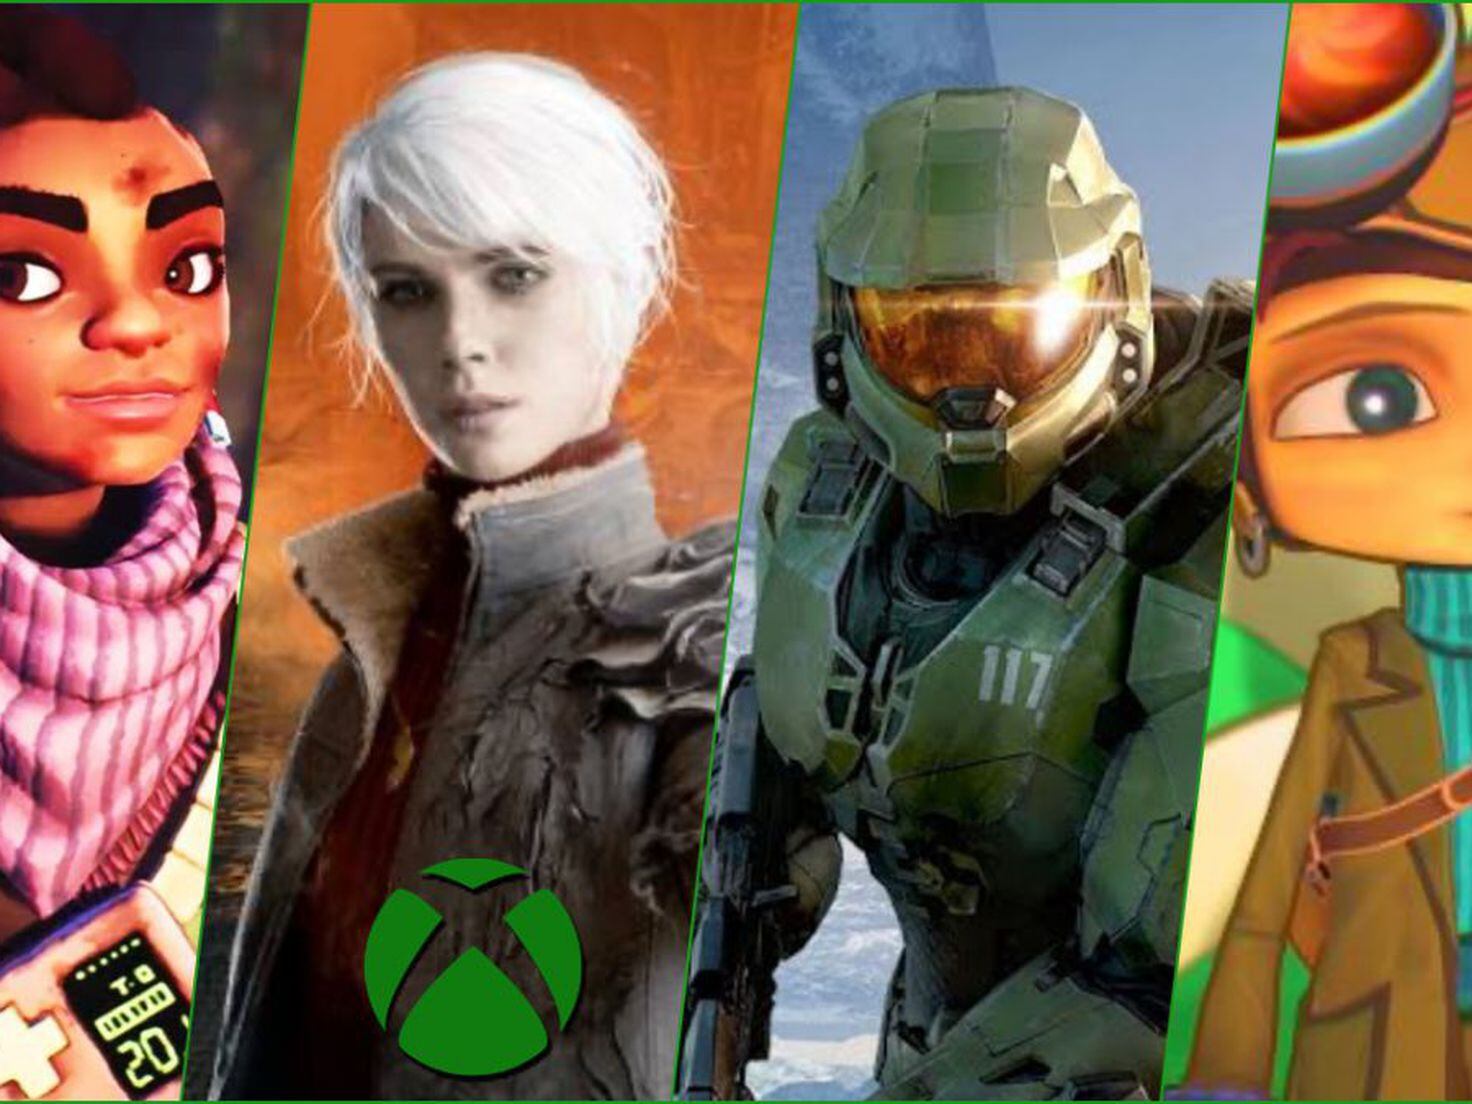 Los 15 mejores juegos exclusivos de Xbox One - Meristation